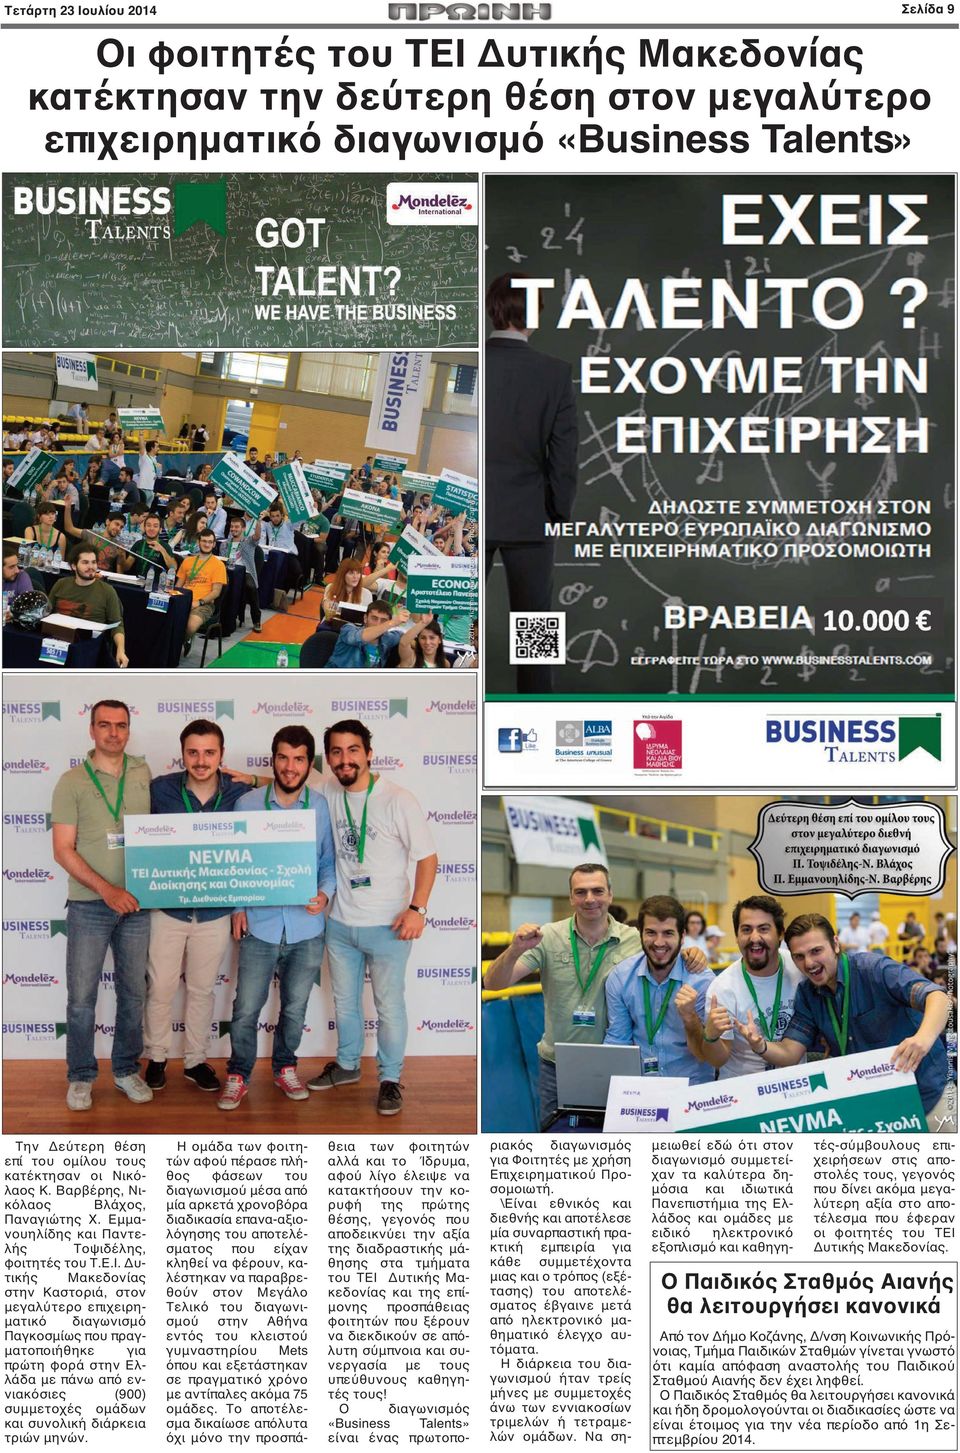 Δυτικής Μακεδονίας στην Καστοριά, στον μεγαλύτερο επιχειρηματικό διαγωνισμό Παγκοσμίως που πραγματοποιήθηκε για πρώτη φορά στην Ελλάδα με πάνω από εννιακόσιες (900) συμμετοχές ομάδων και συνολική